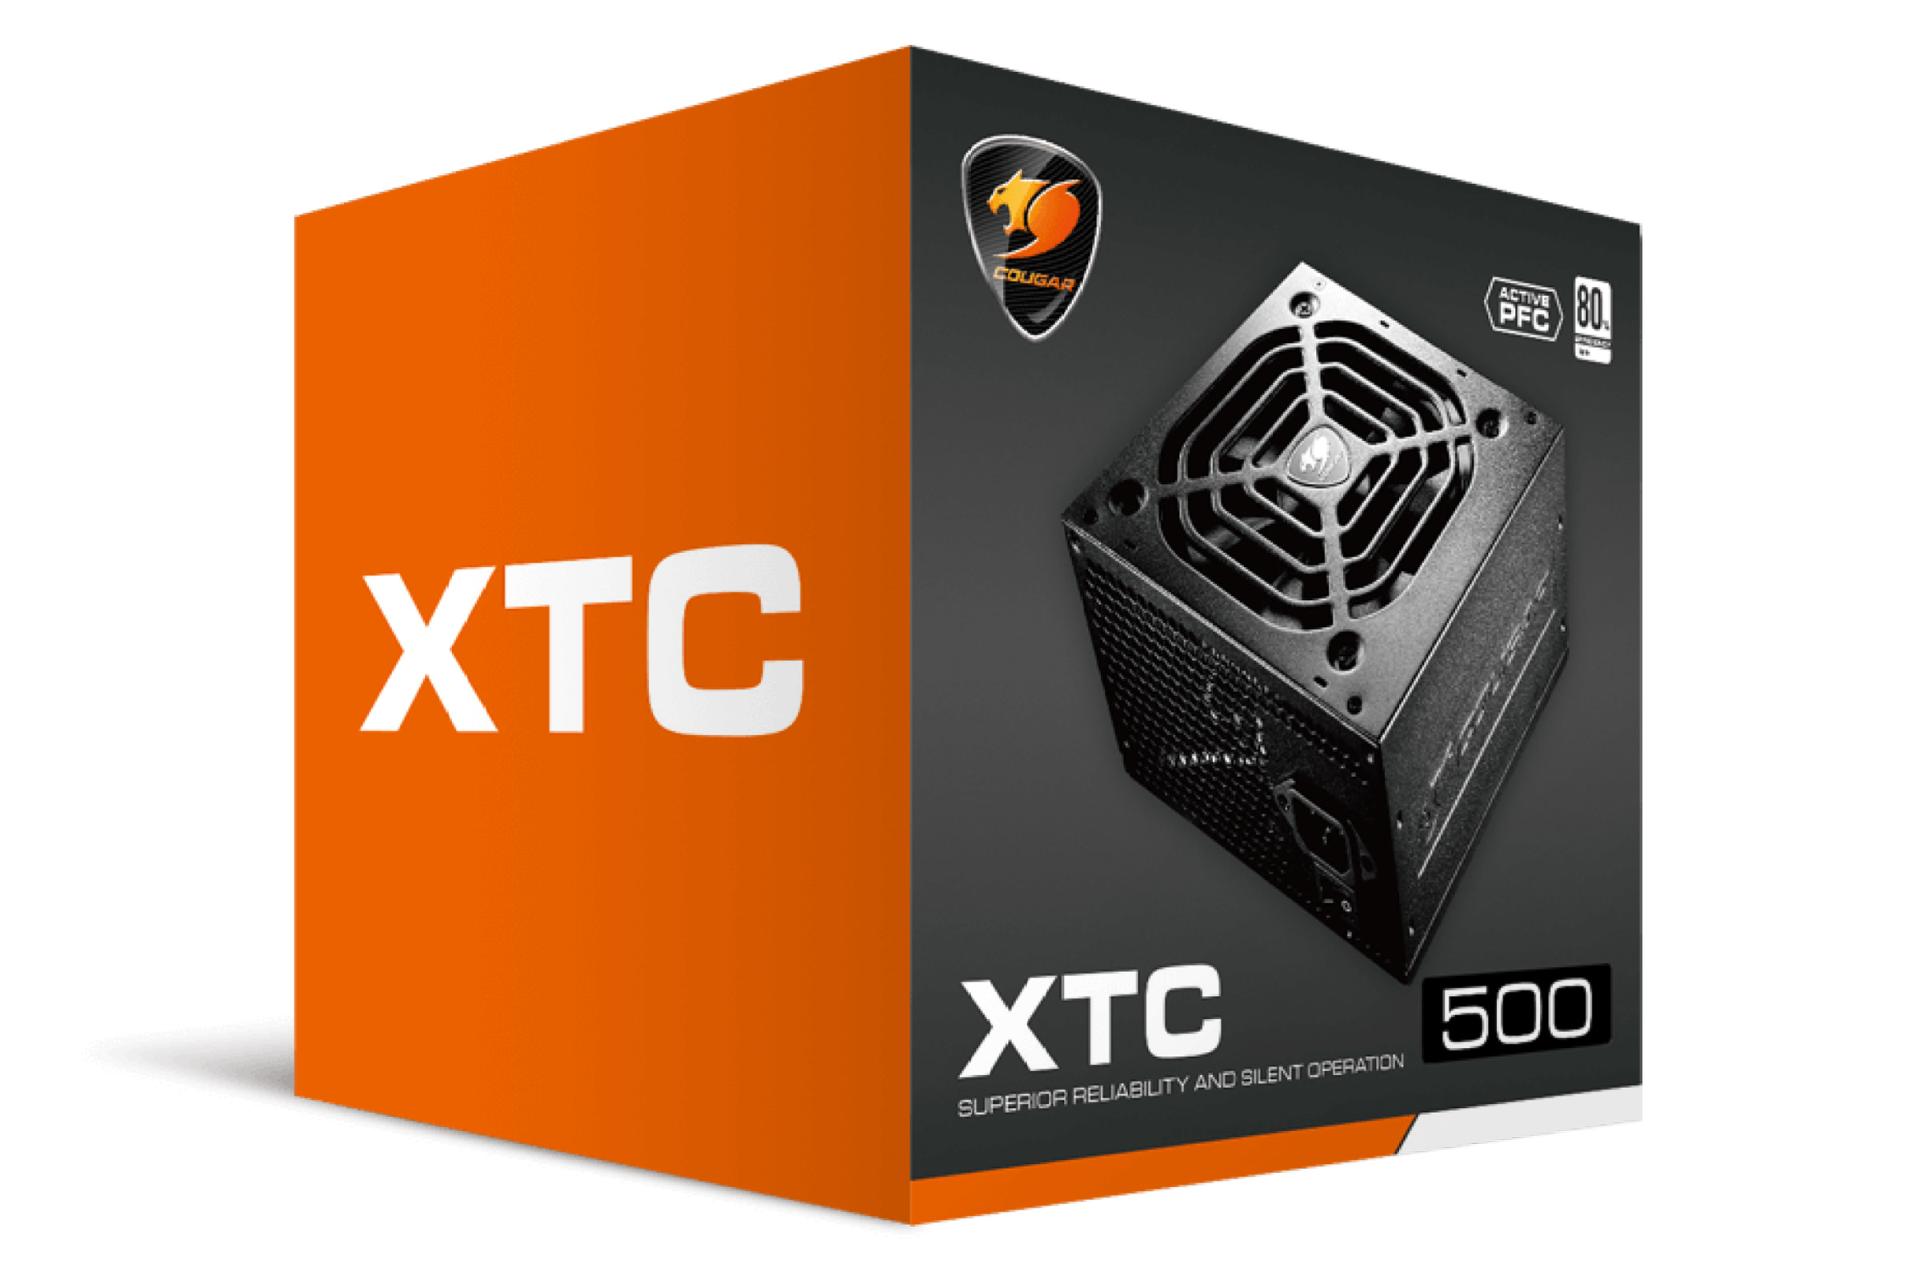 جعبه پاور کامپیوتر کوگر XTC 500 با توان 500 وات